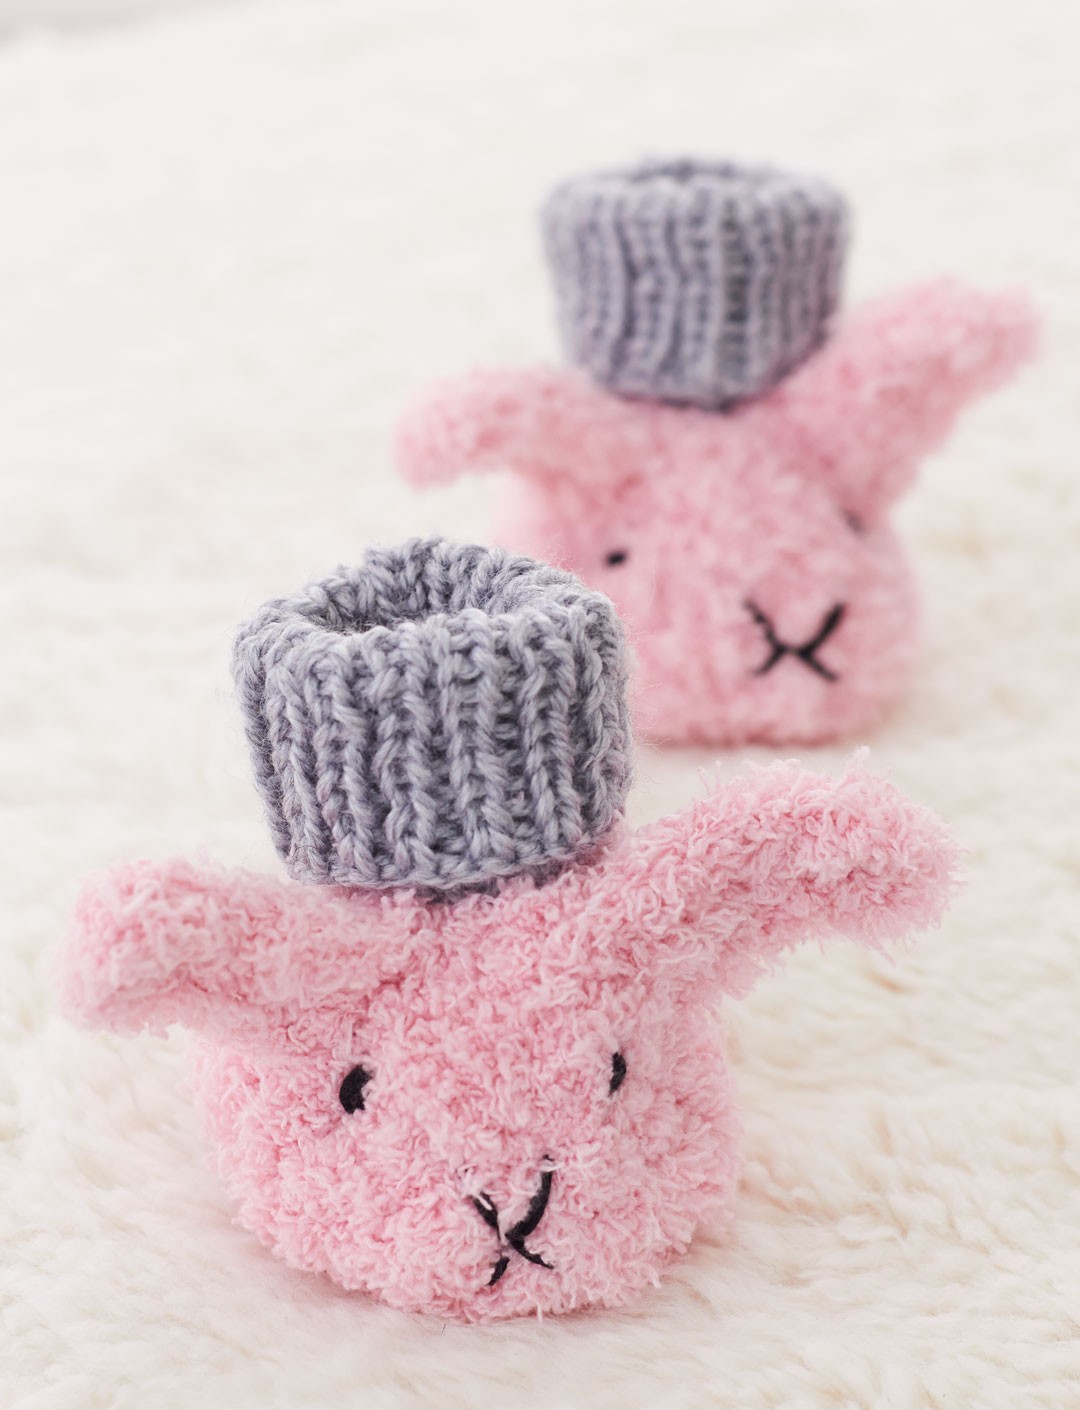 Itty Bitty Fuzzy Wuzzy Bunny Booties Free Knitting Pattern | Free Bunny Rabbit Knitting Patterns at http://intheloopknitting.com/free-bunny-knitting-patterns